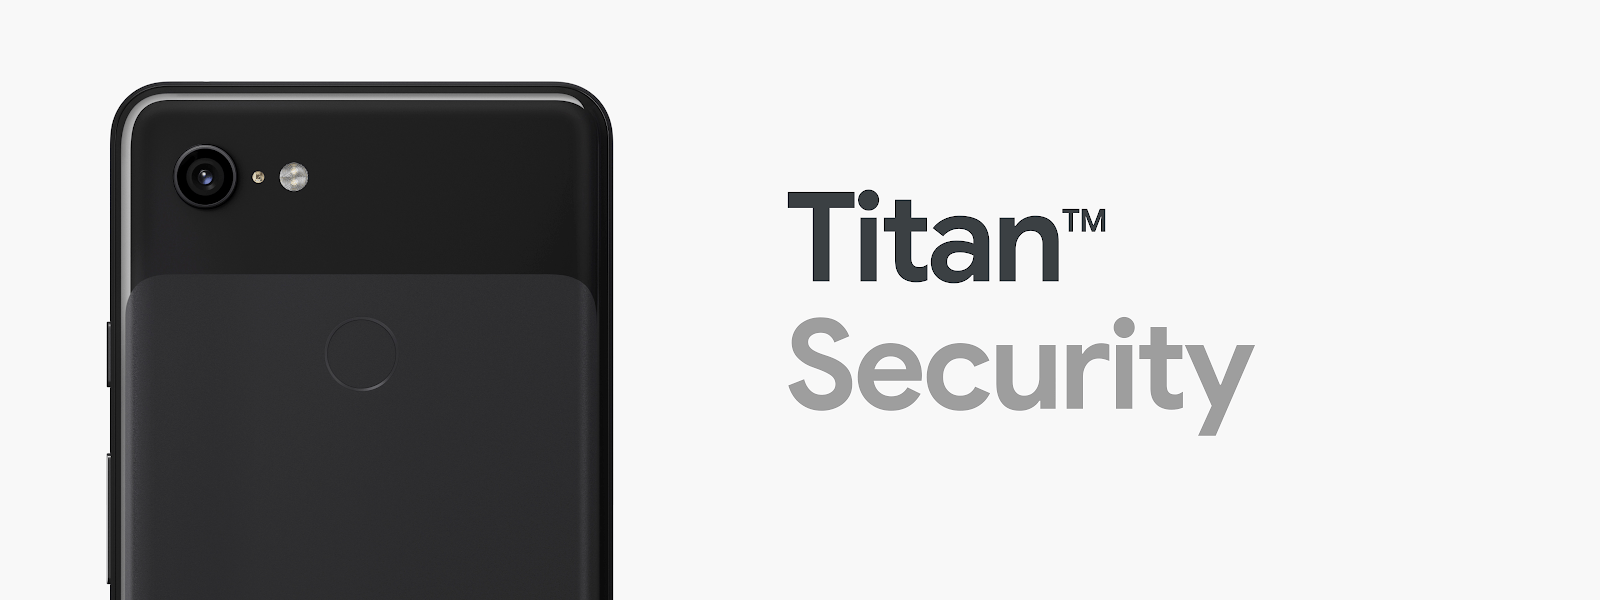 Titan M security chip